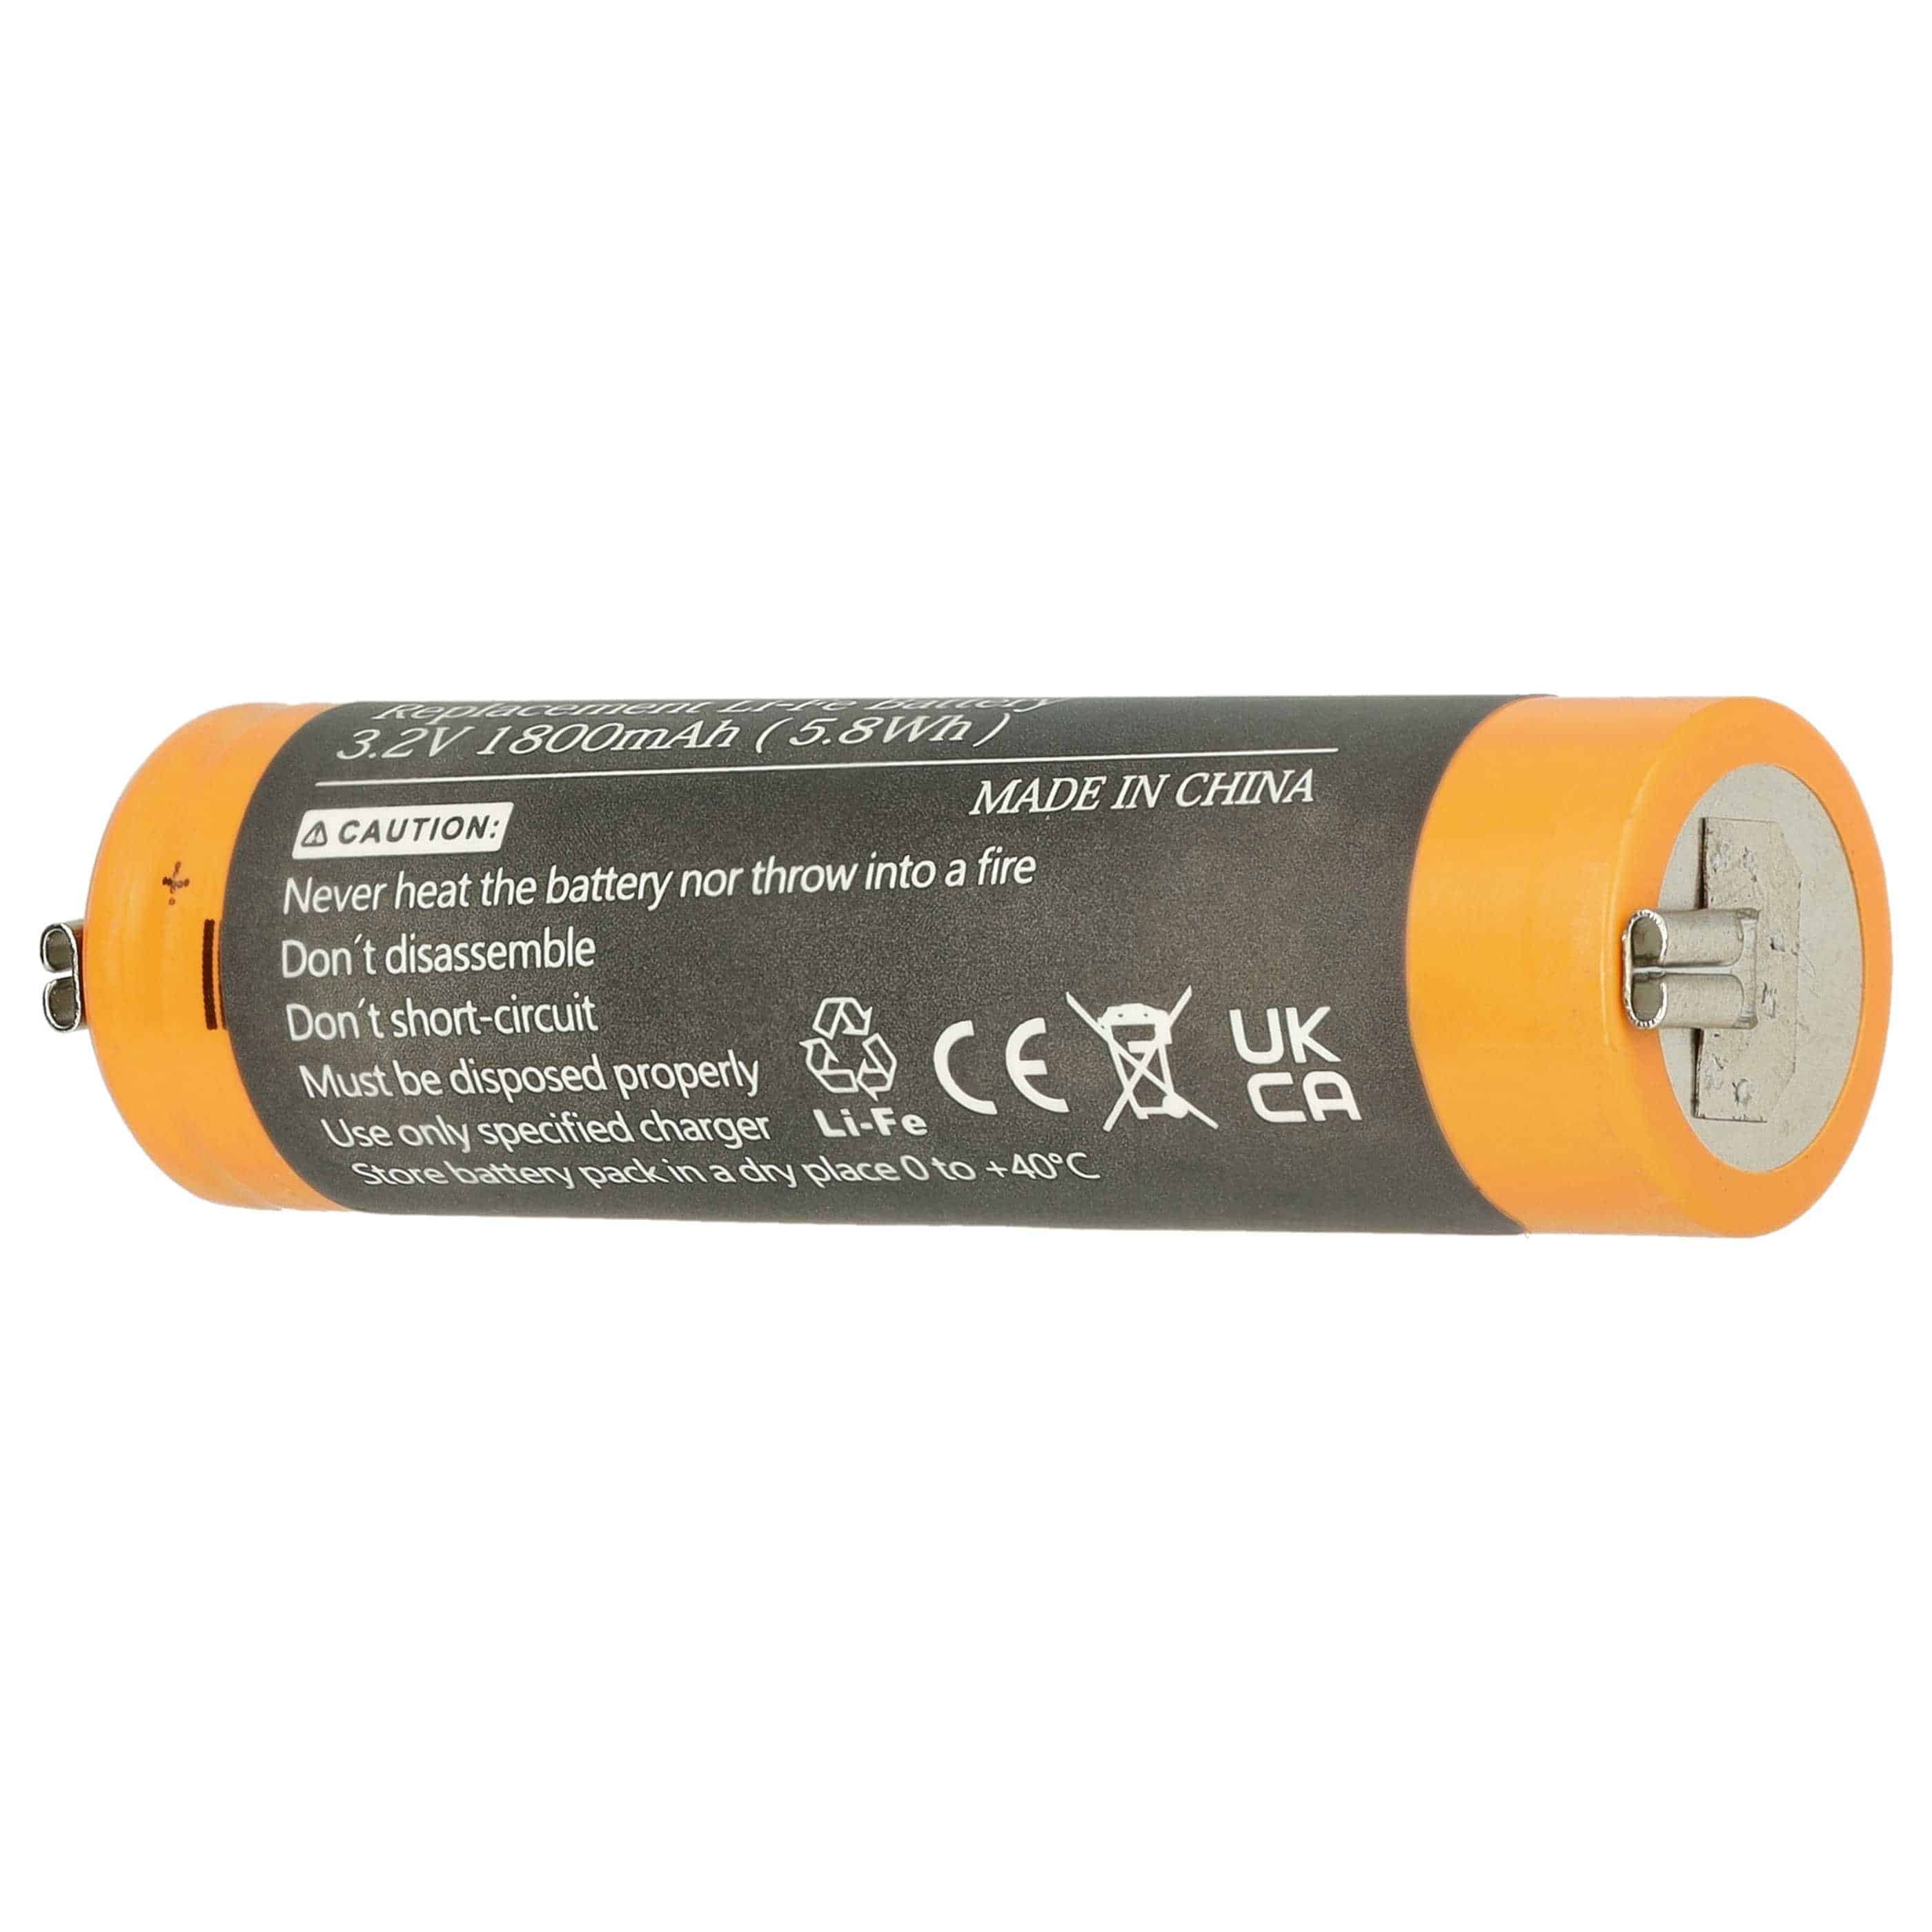 Batterie remplace Moser 1884-7102 pour tondeuse à cheveux - 1800mAh 3,2V Li-ion